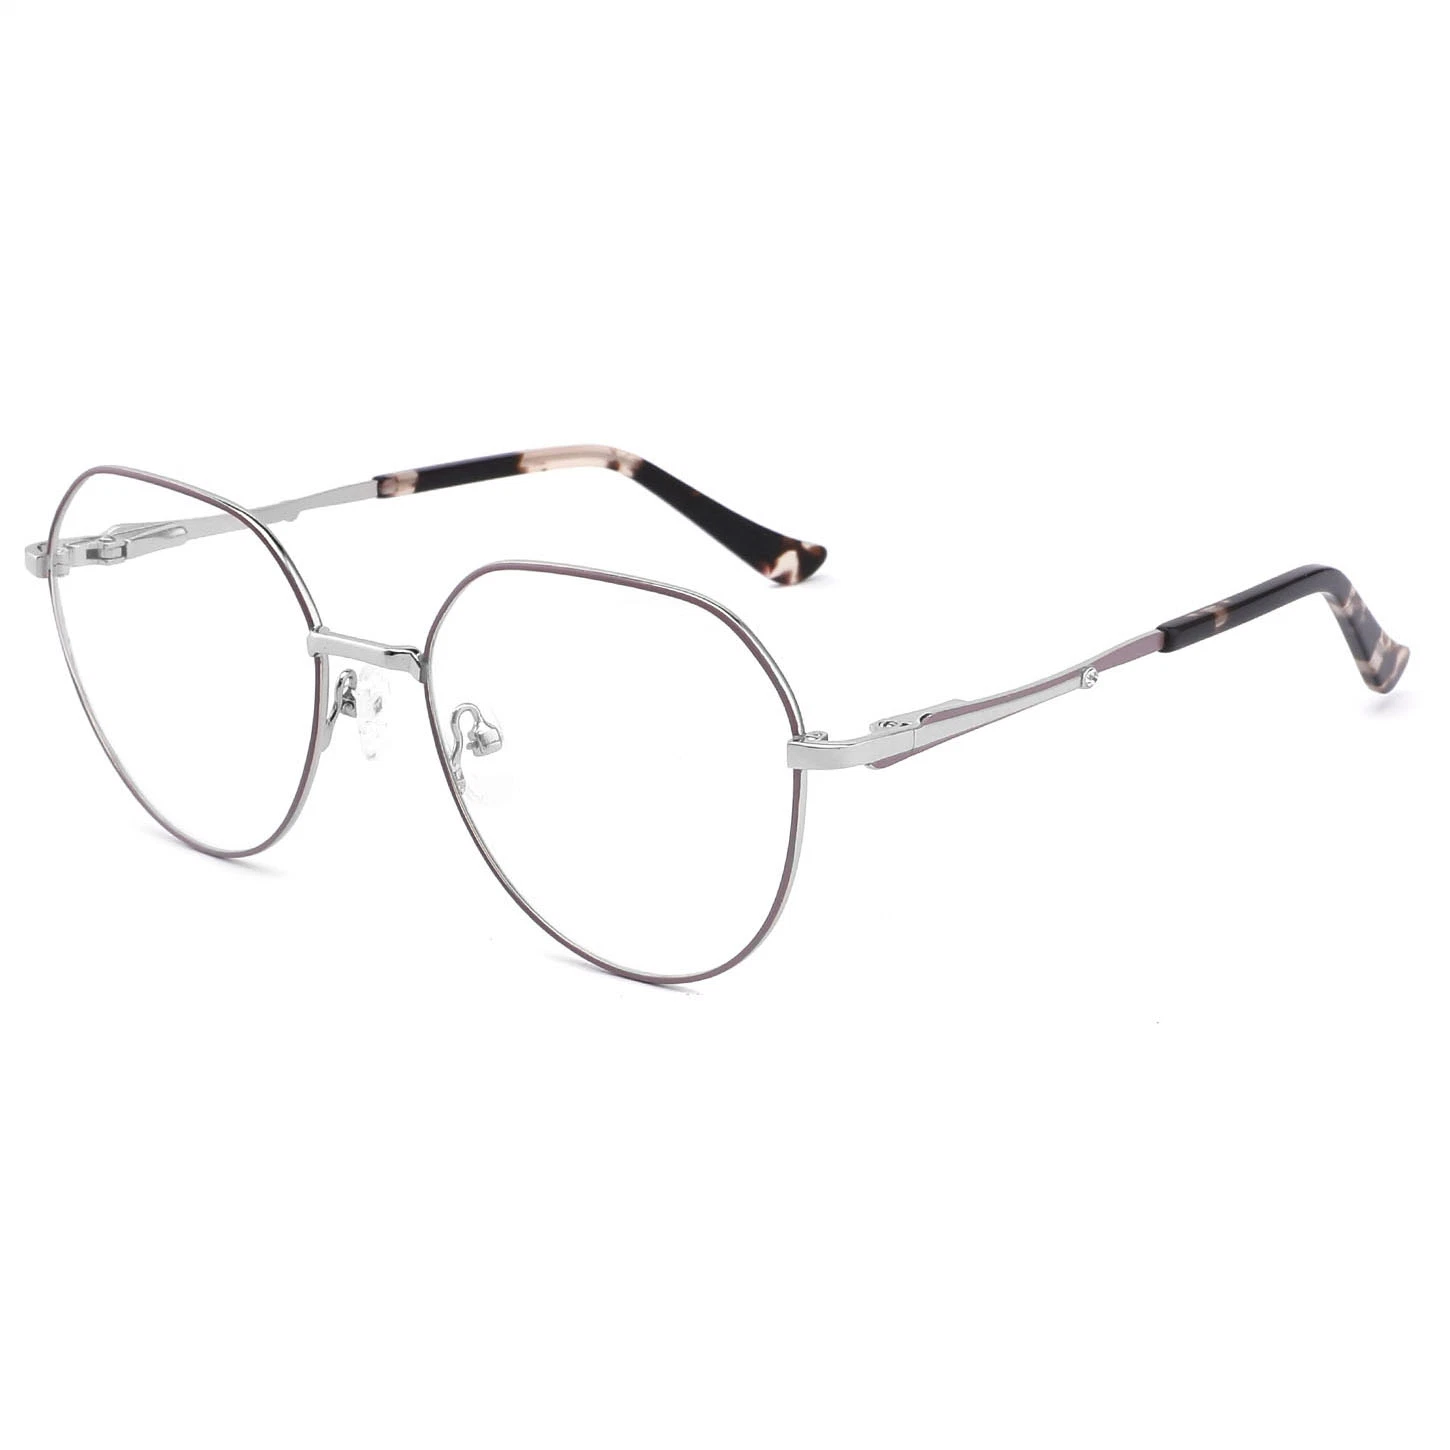 Base de forma redonda estilo gafas el marco de metal un estilo de diseño de moda retro Marcos óptico